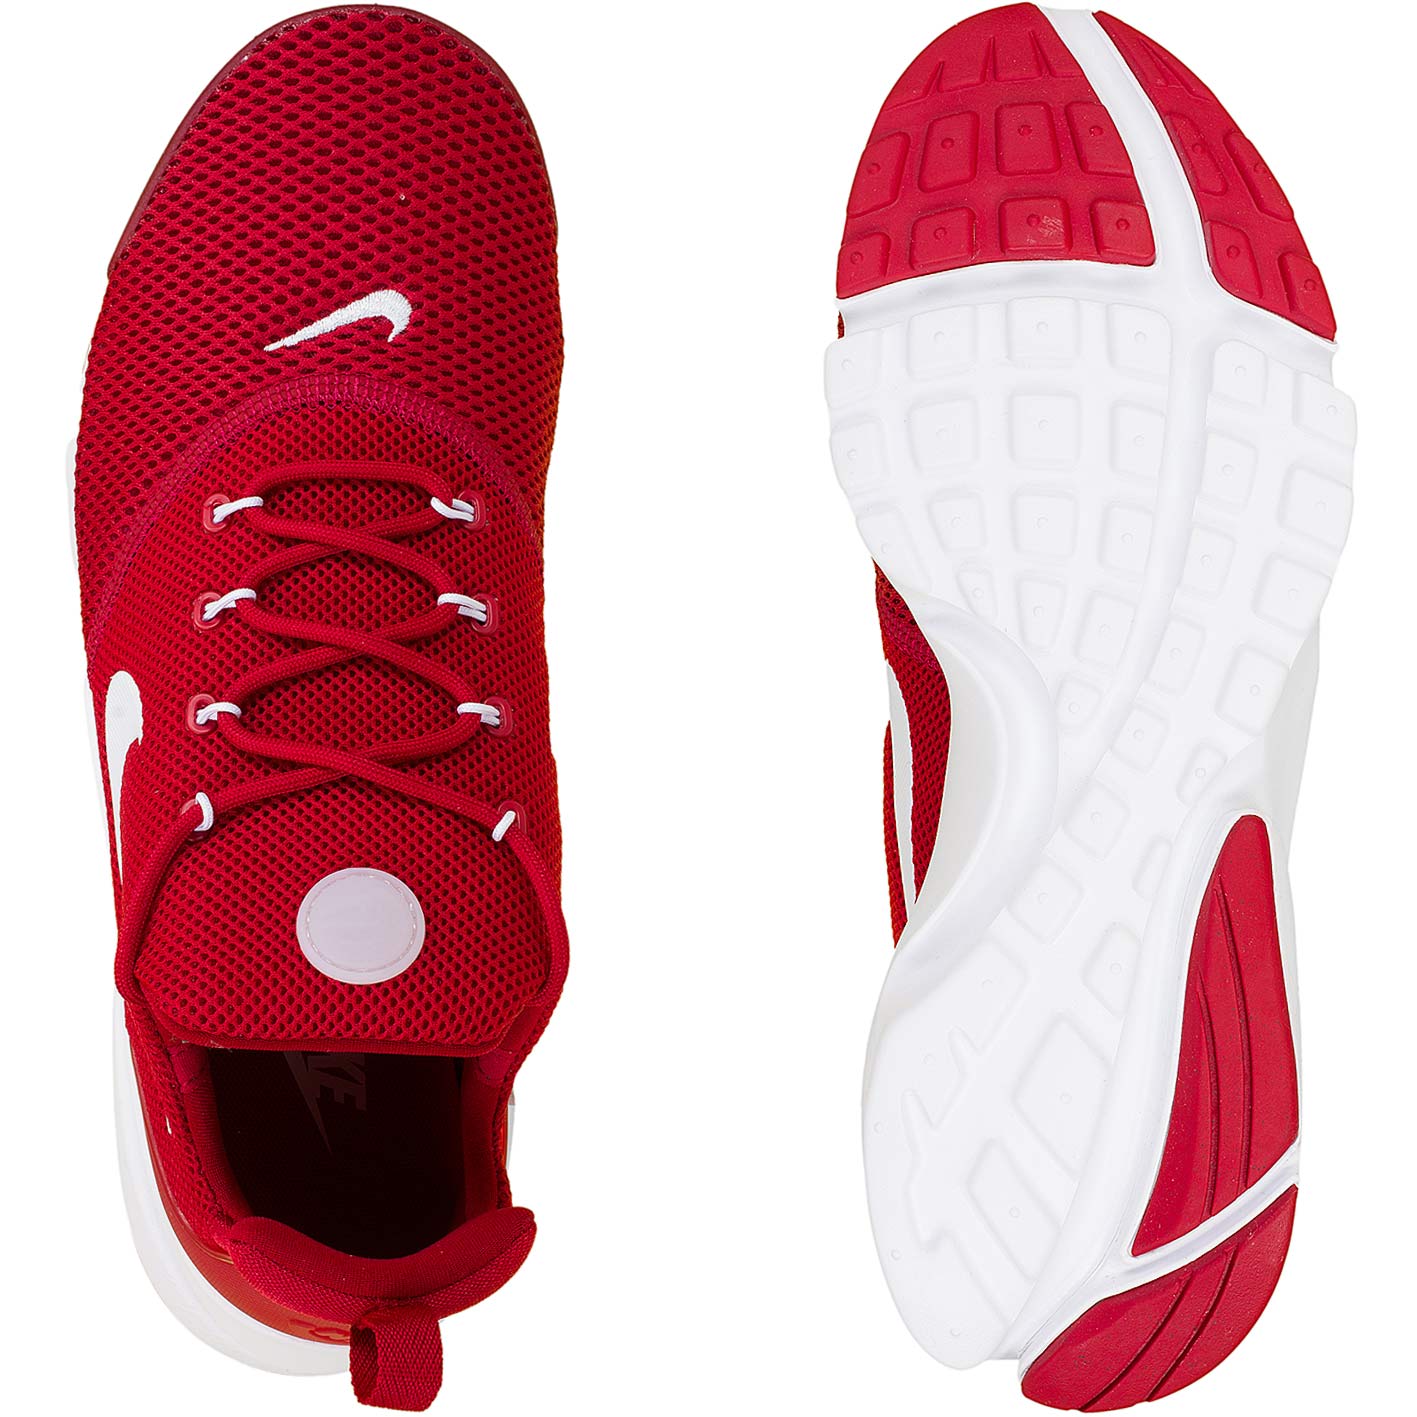 ☆ Nike Sneaker Presto Fly rot/weiß - hier bestellen!